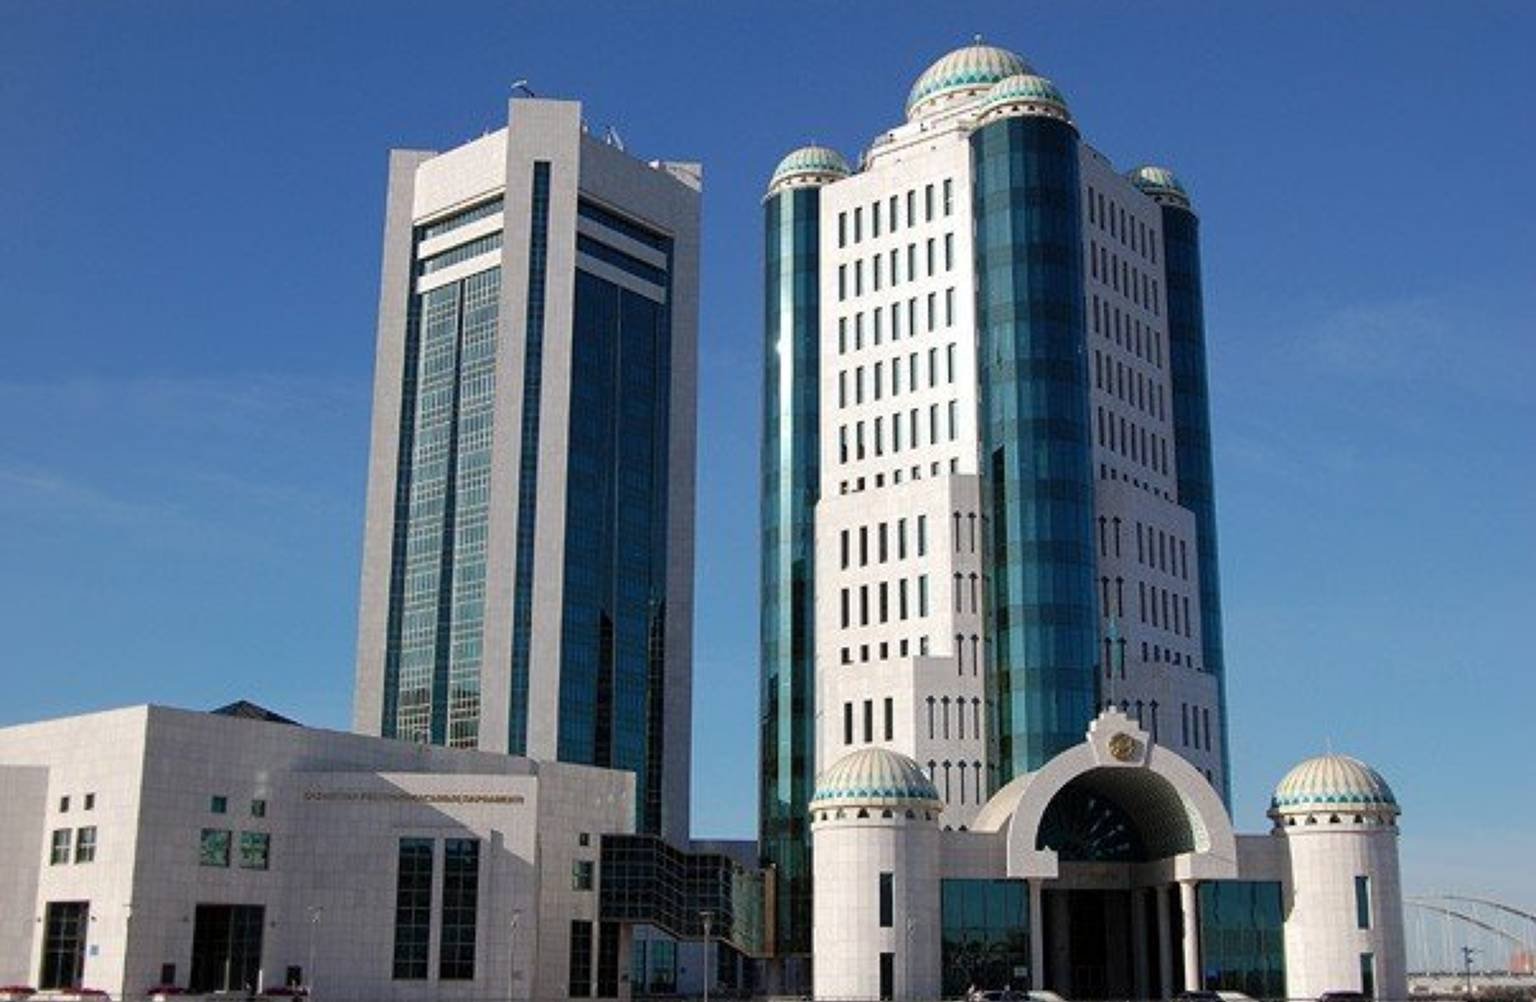 В Казахстане в избирательные бюллетени включены 46 кандидатов в сенат - ЦИК